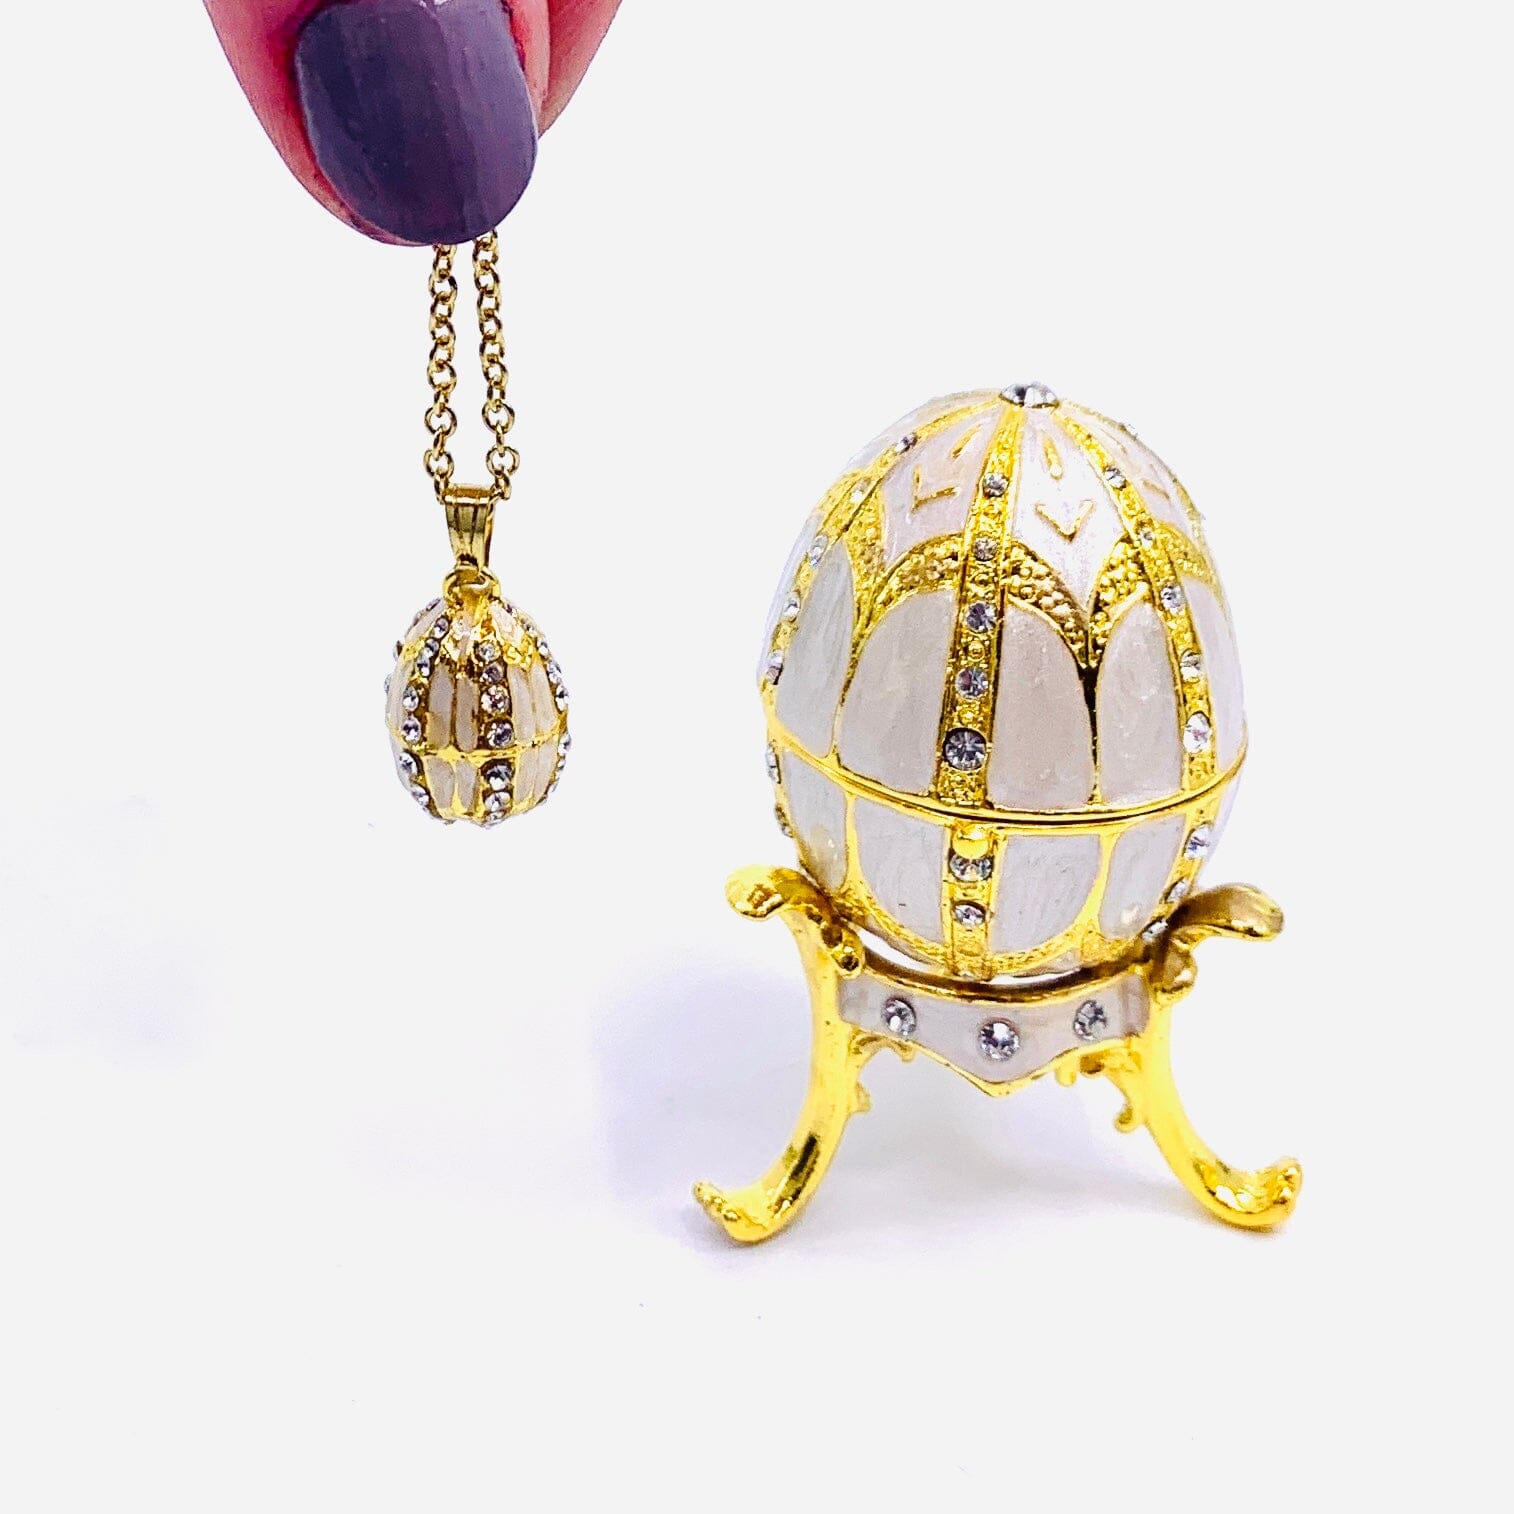 Bejeweled Enamel Trinket Box and Pendant 26, White Faberge Style Egg Decor Kubla Craft 